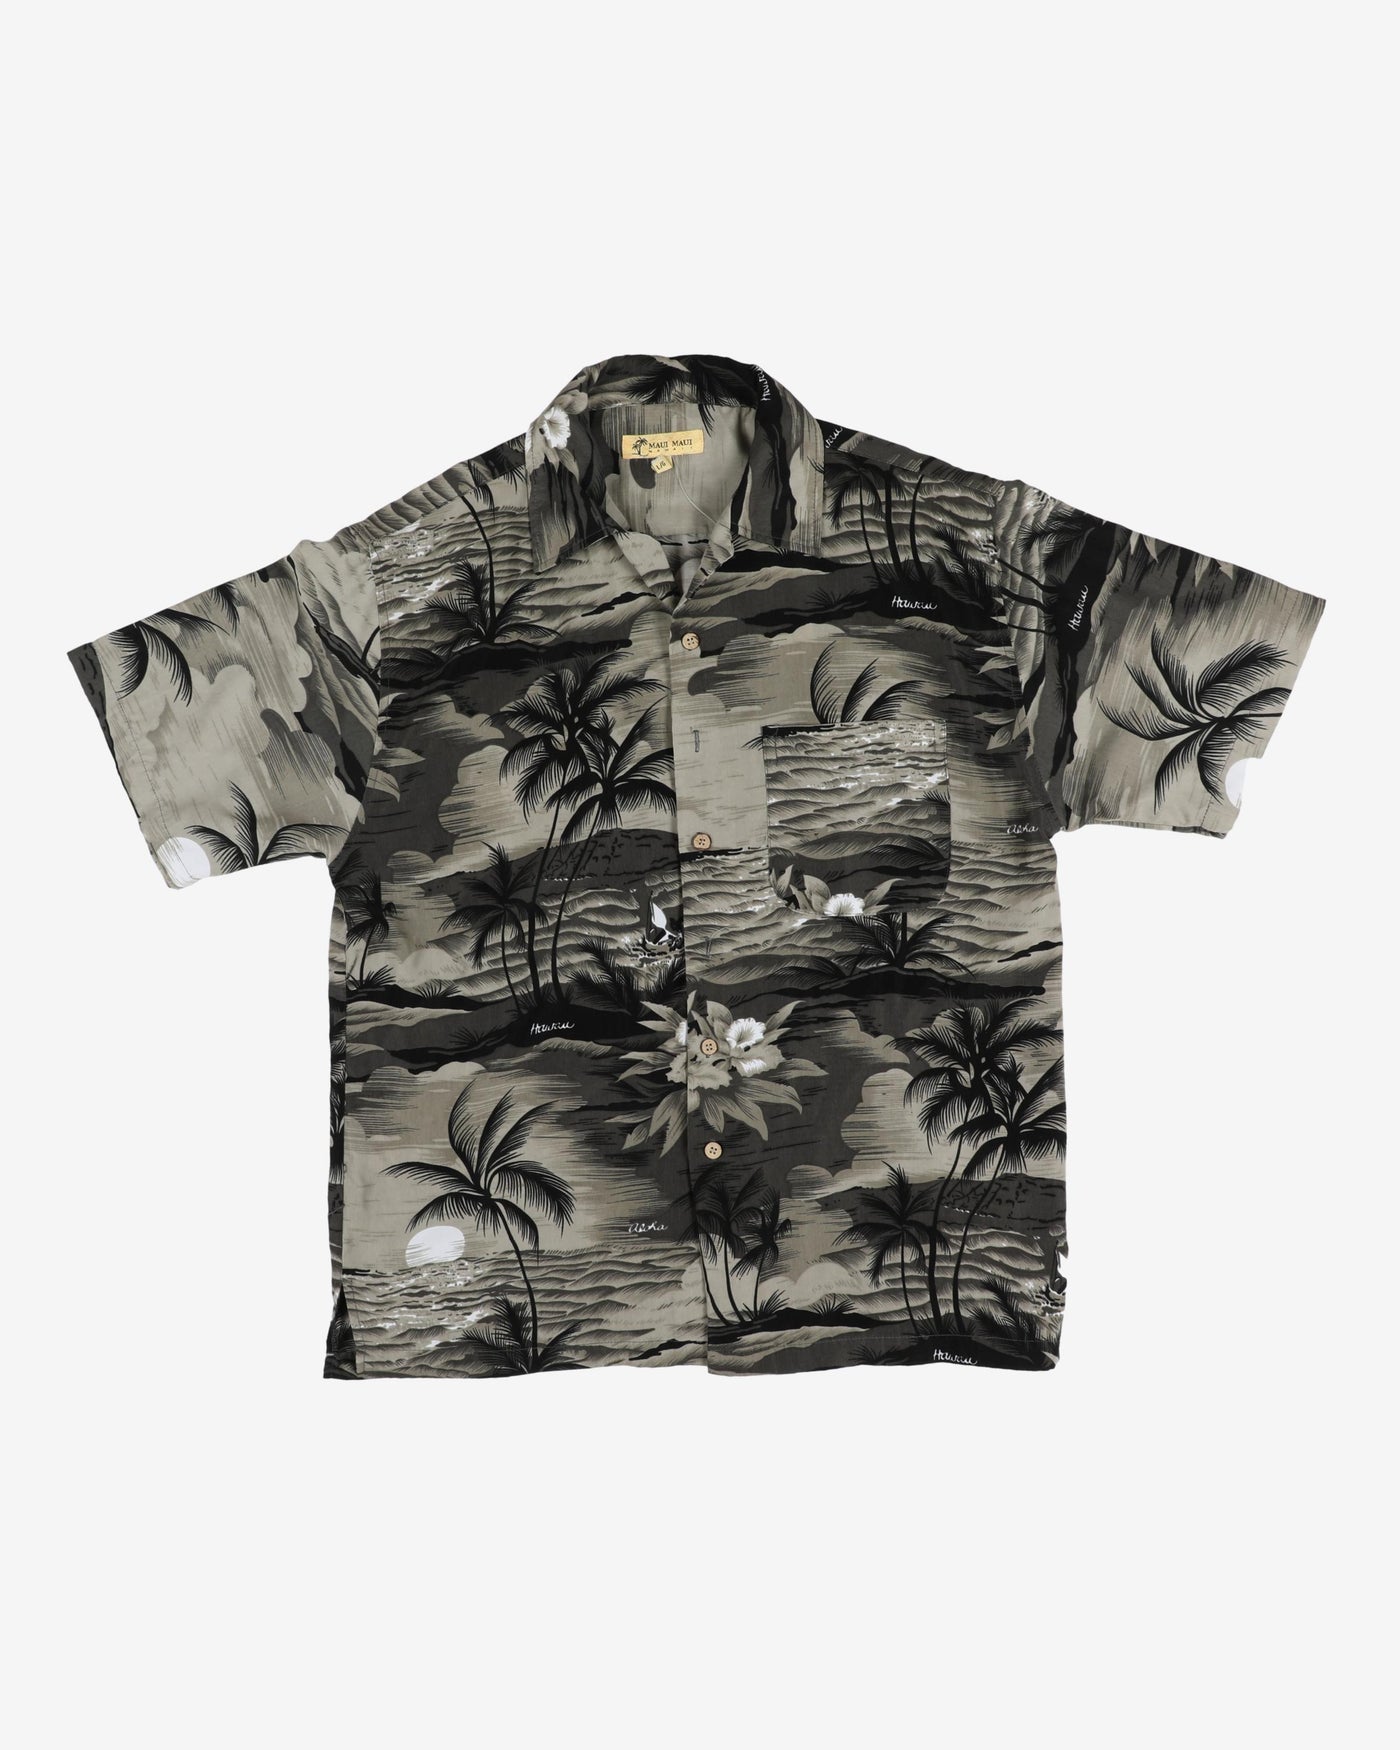 Vintage Maui Maui Black Tropical Patterned Hawaiian Shirt - L